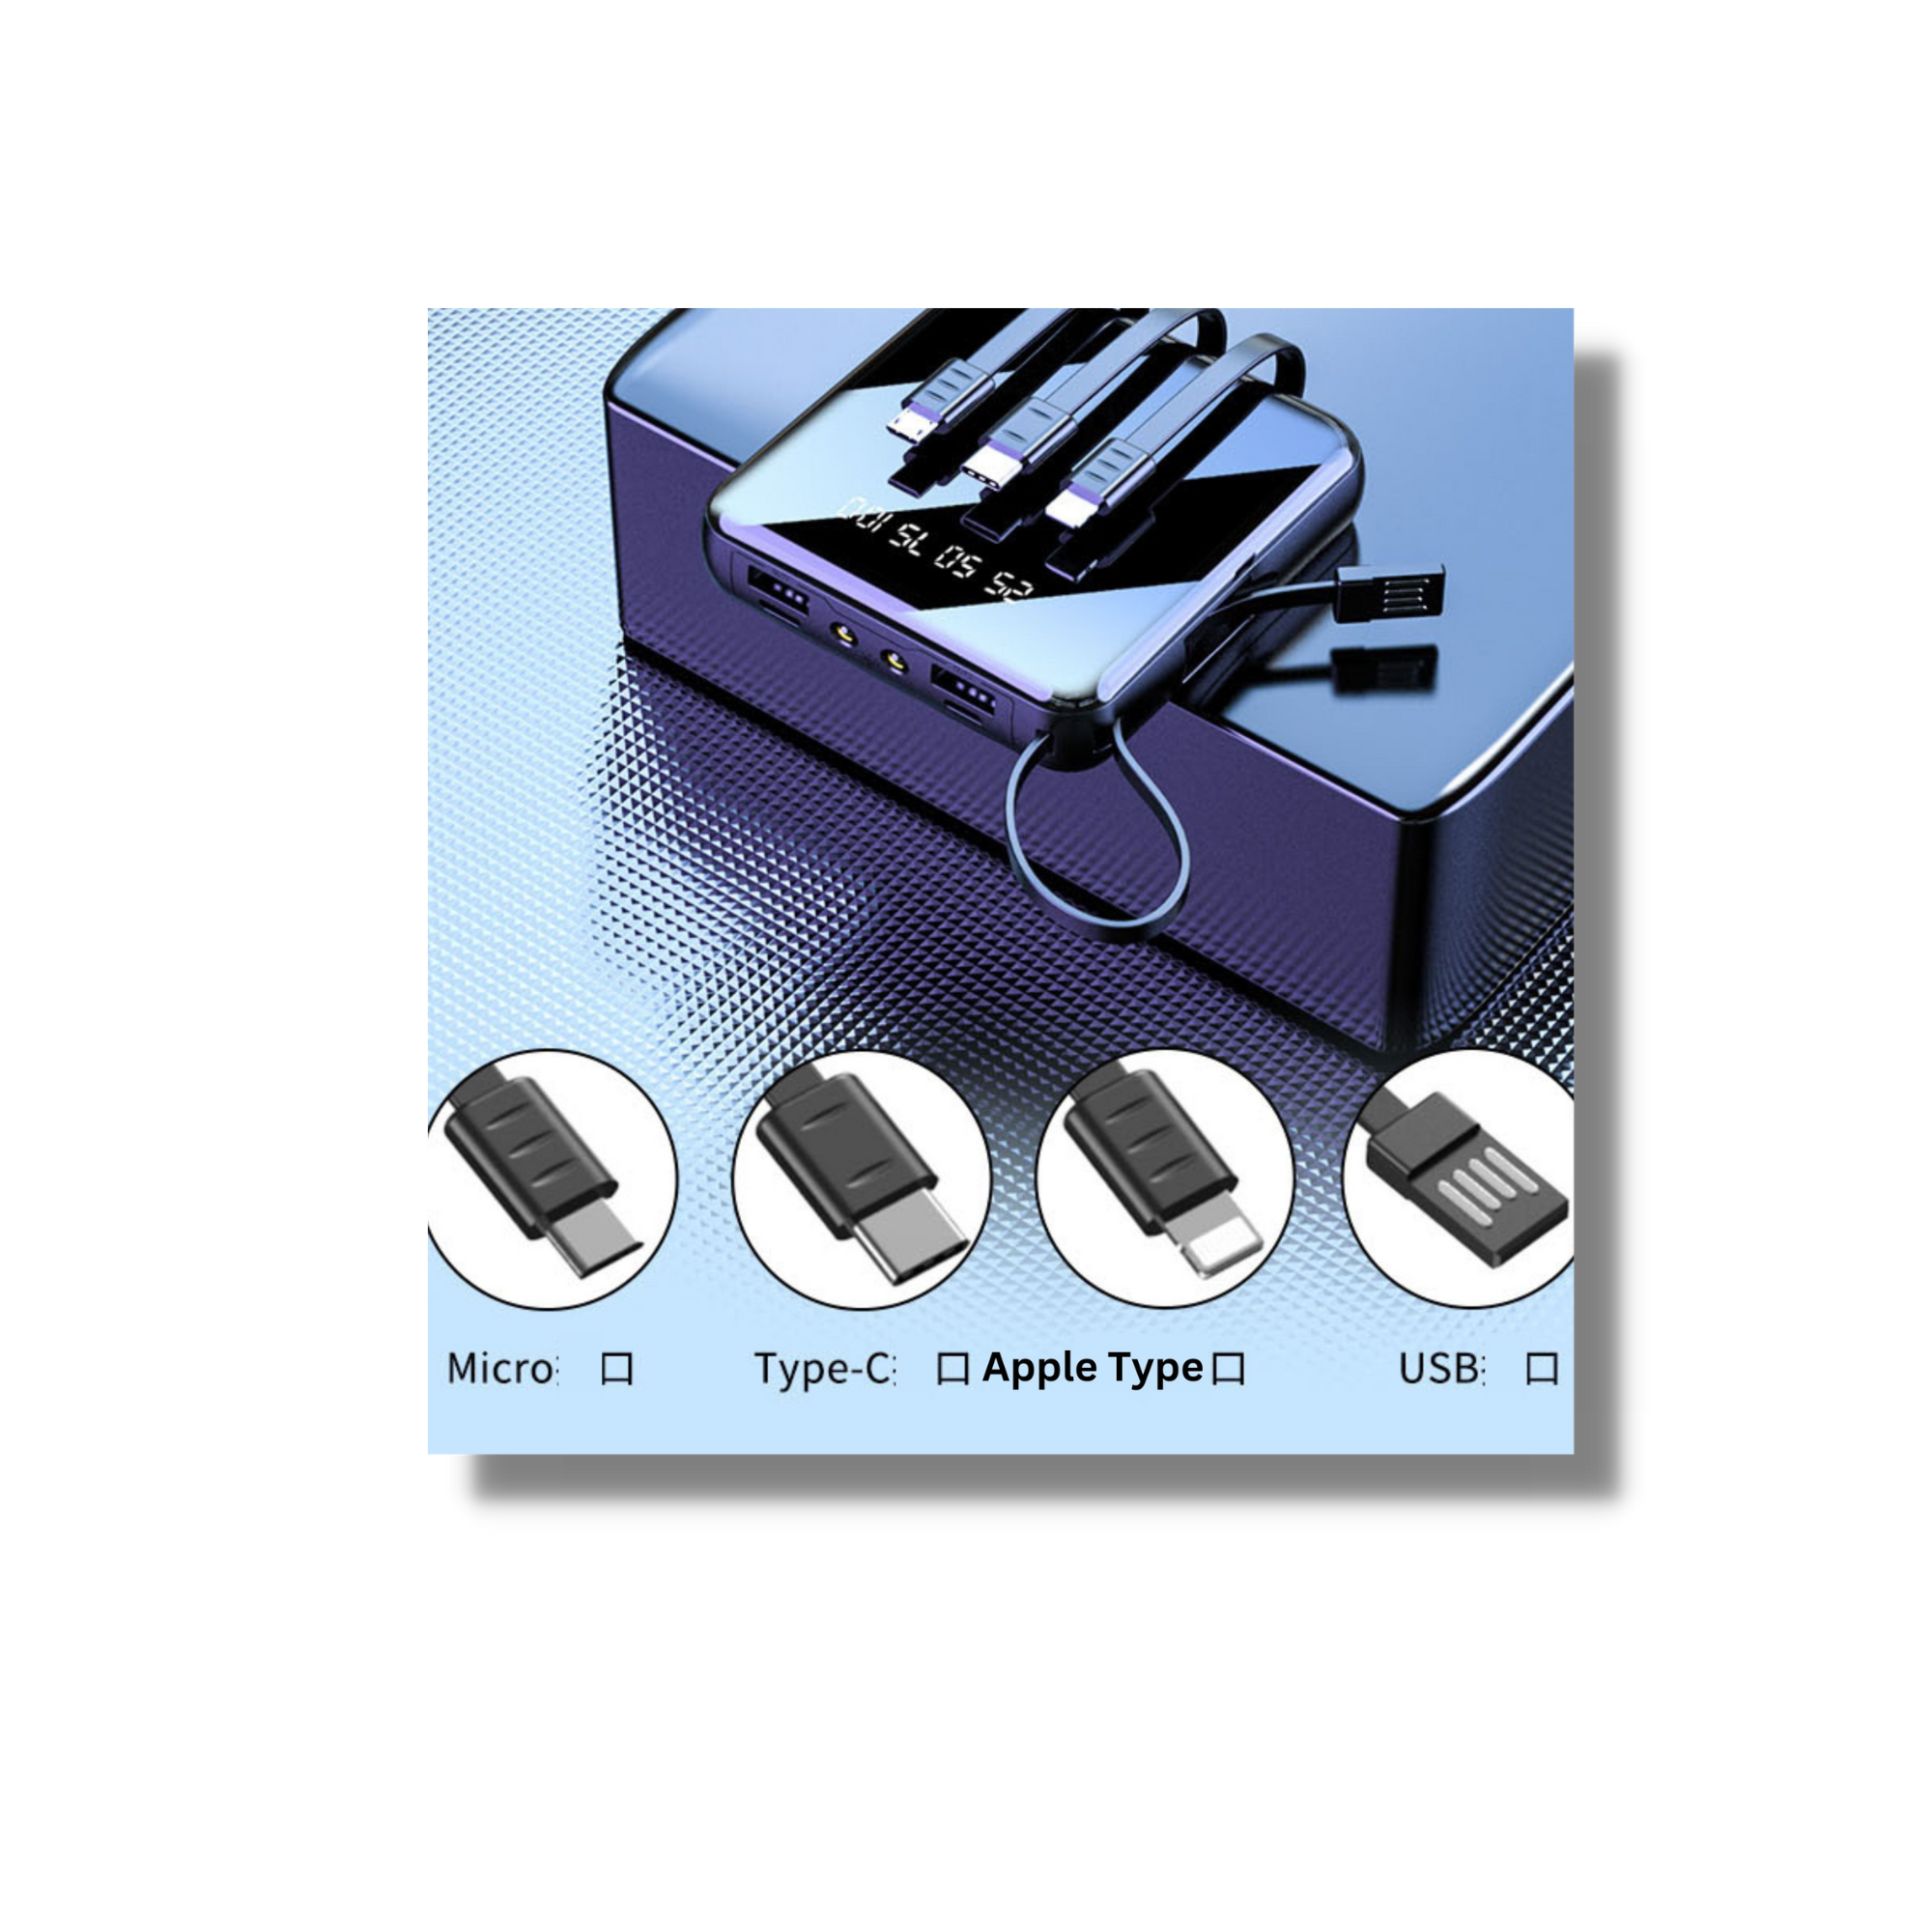 20000mAh Power Bank In-Built Connectors for iPhone/iPad Port, USB, Mini USB Port and USB-C Port